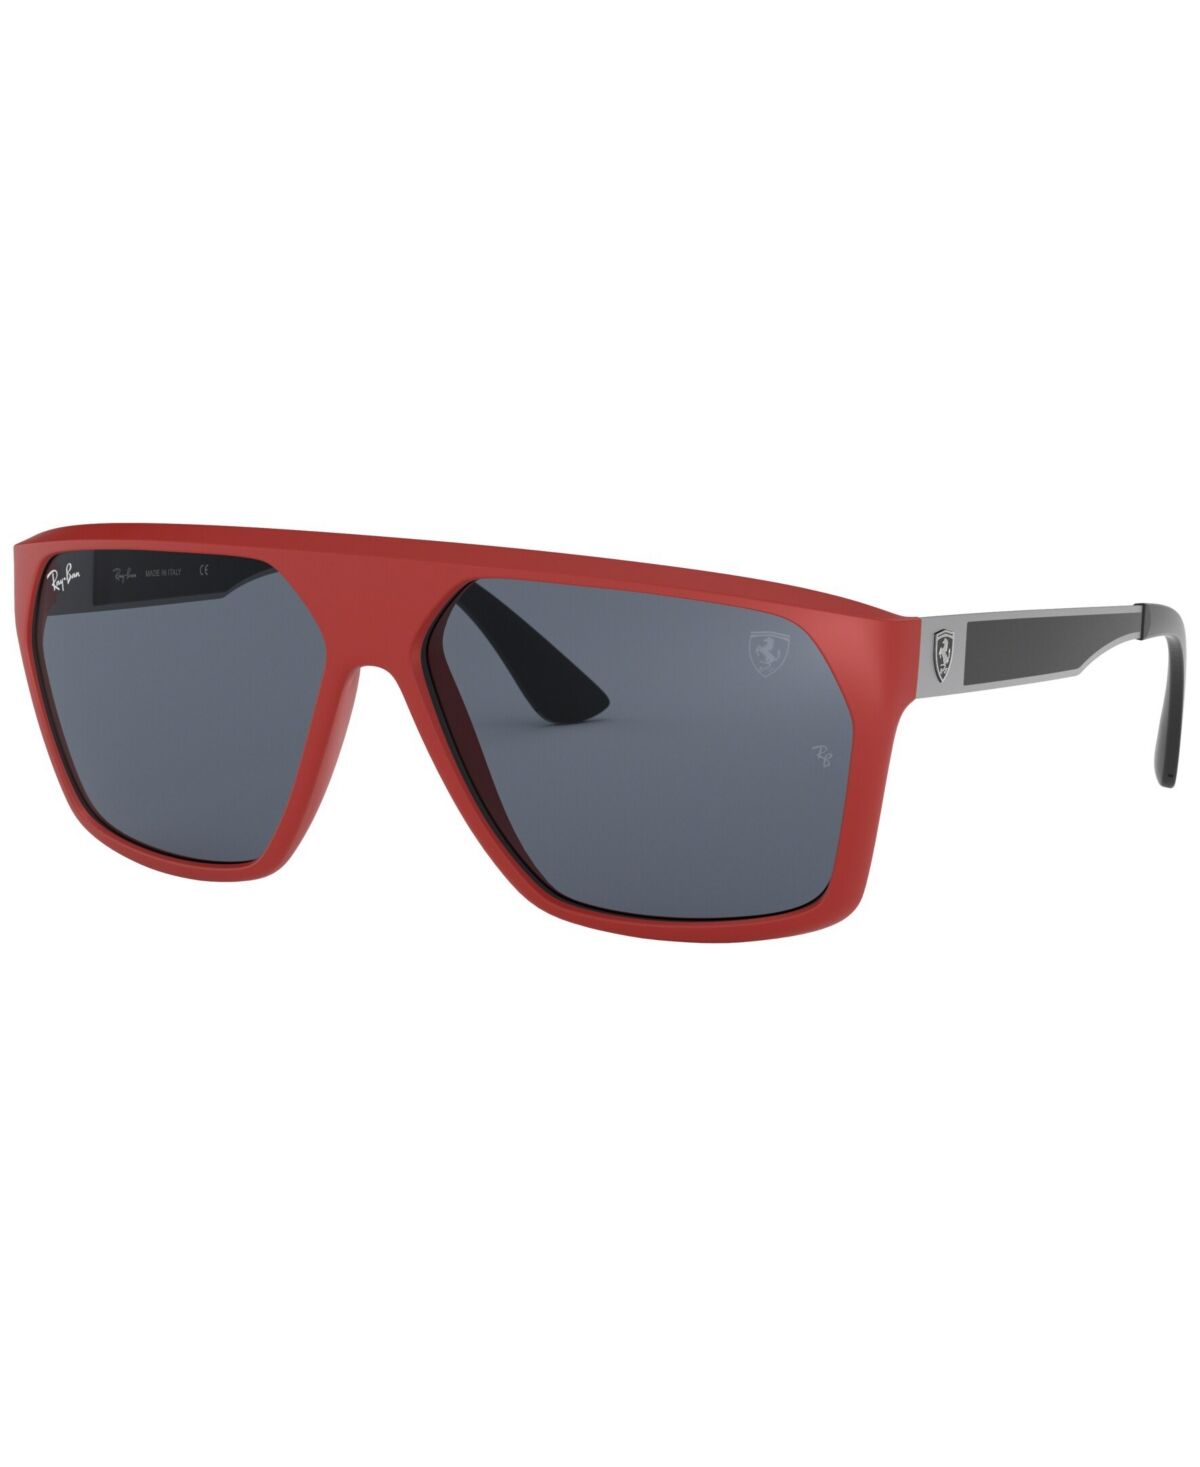 Ray-Ban Men's Sunglasses, RB4309M Scuderia Ferrari Collection 60 - Red